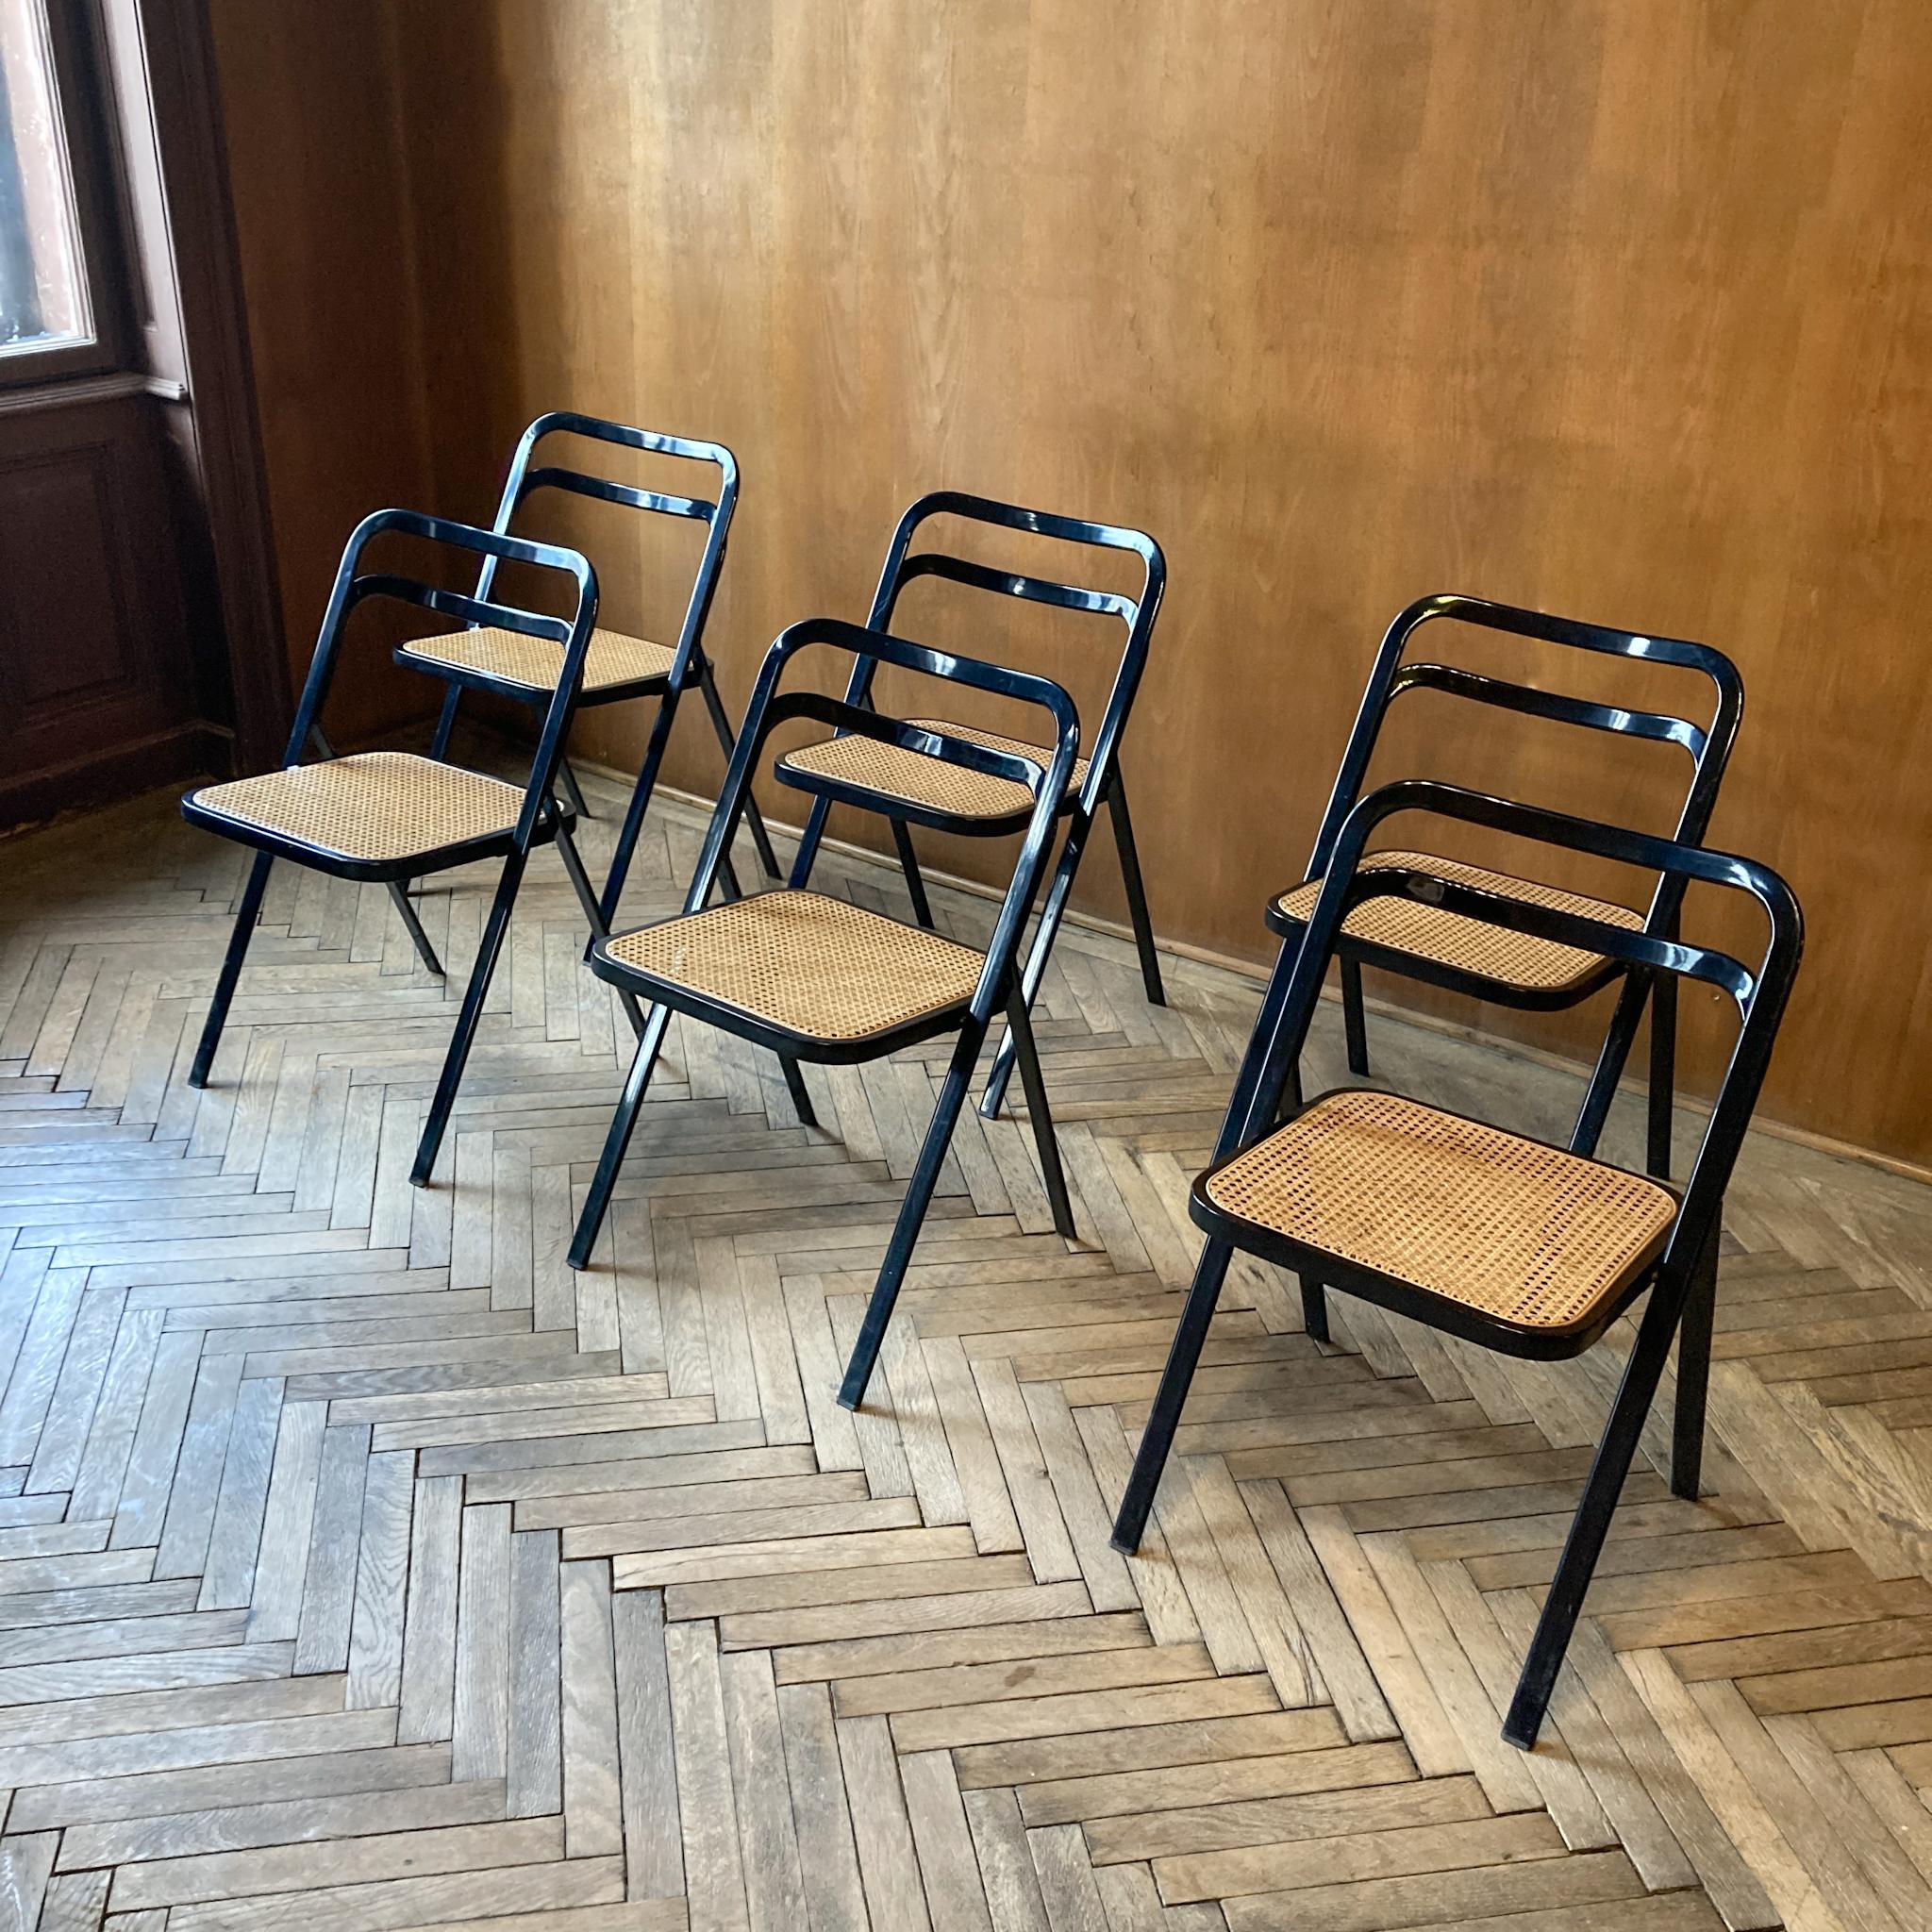 Chaises pliantes modernes du milieu du siècle paille viennoise par G. Cattelan, Italie 1970.

Cet ensemble de 6 chaises pliantes 